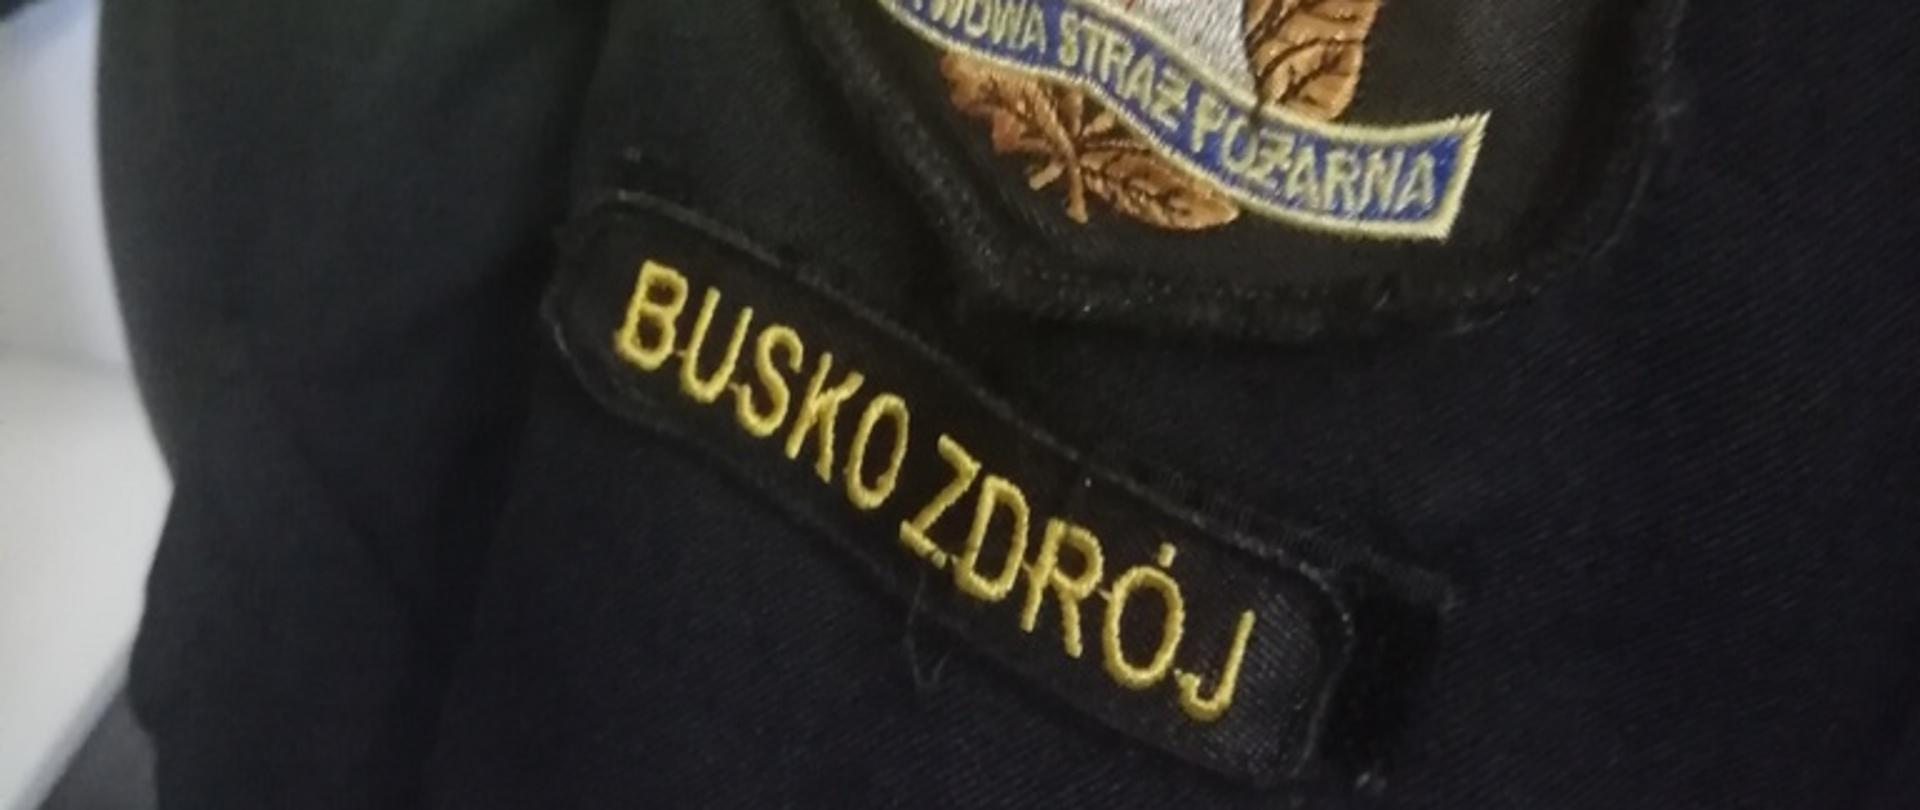 Na zdjęciu emblemat z logiem Państwowej Straży Pożarnej i napisem Busko-Zdrój